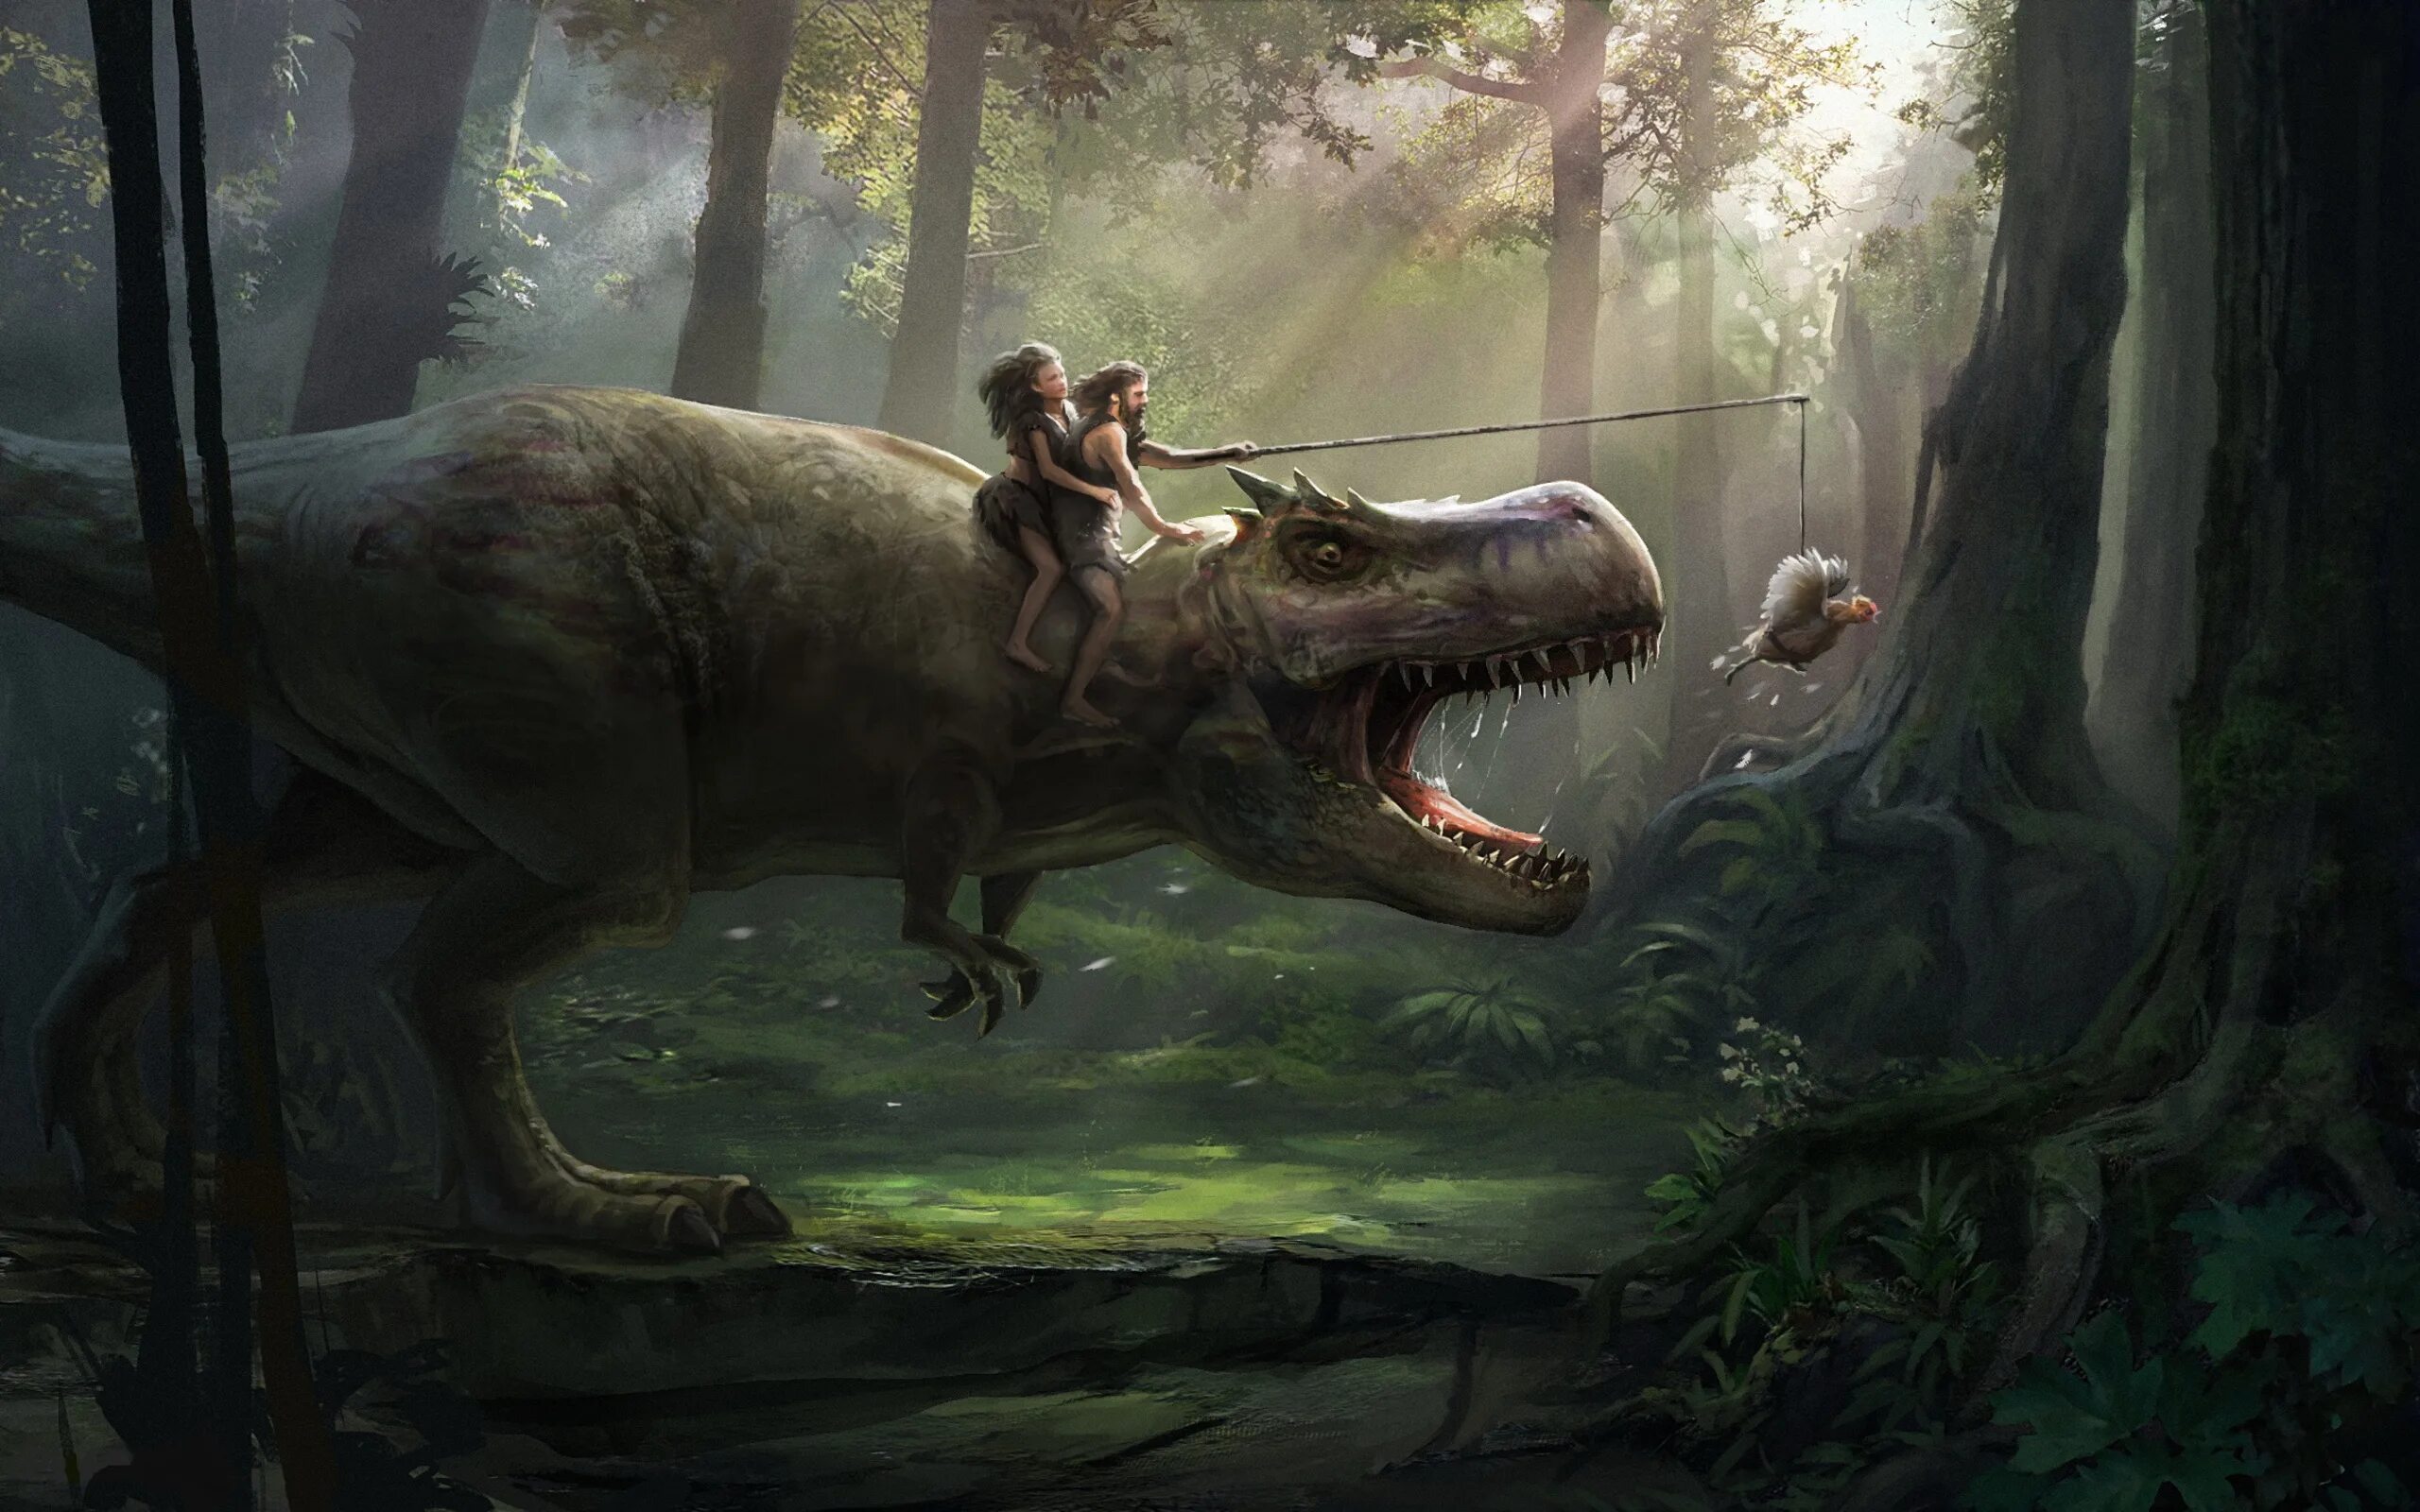 Тираннозавр рекс. Тираннозавр рекс в джунглях. Тираннозавр рекс и человек арт. Тираннозавр АРК арт. Dino human